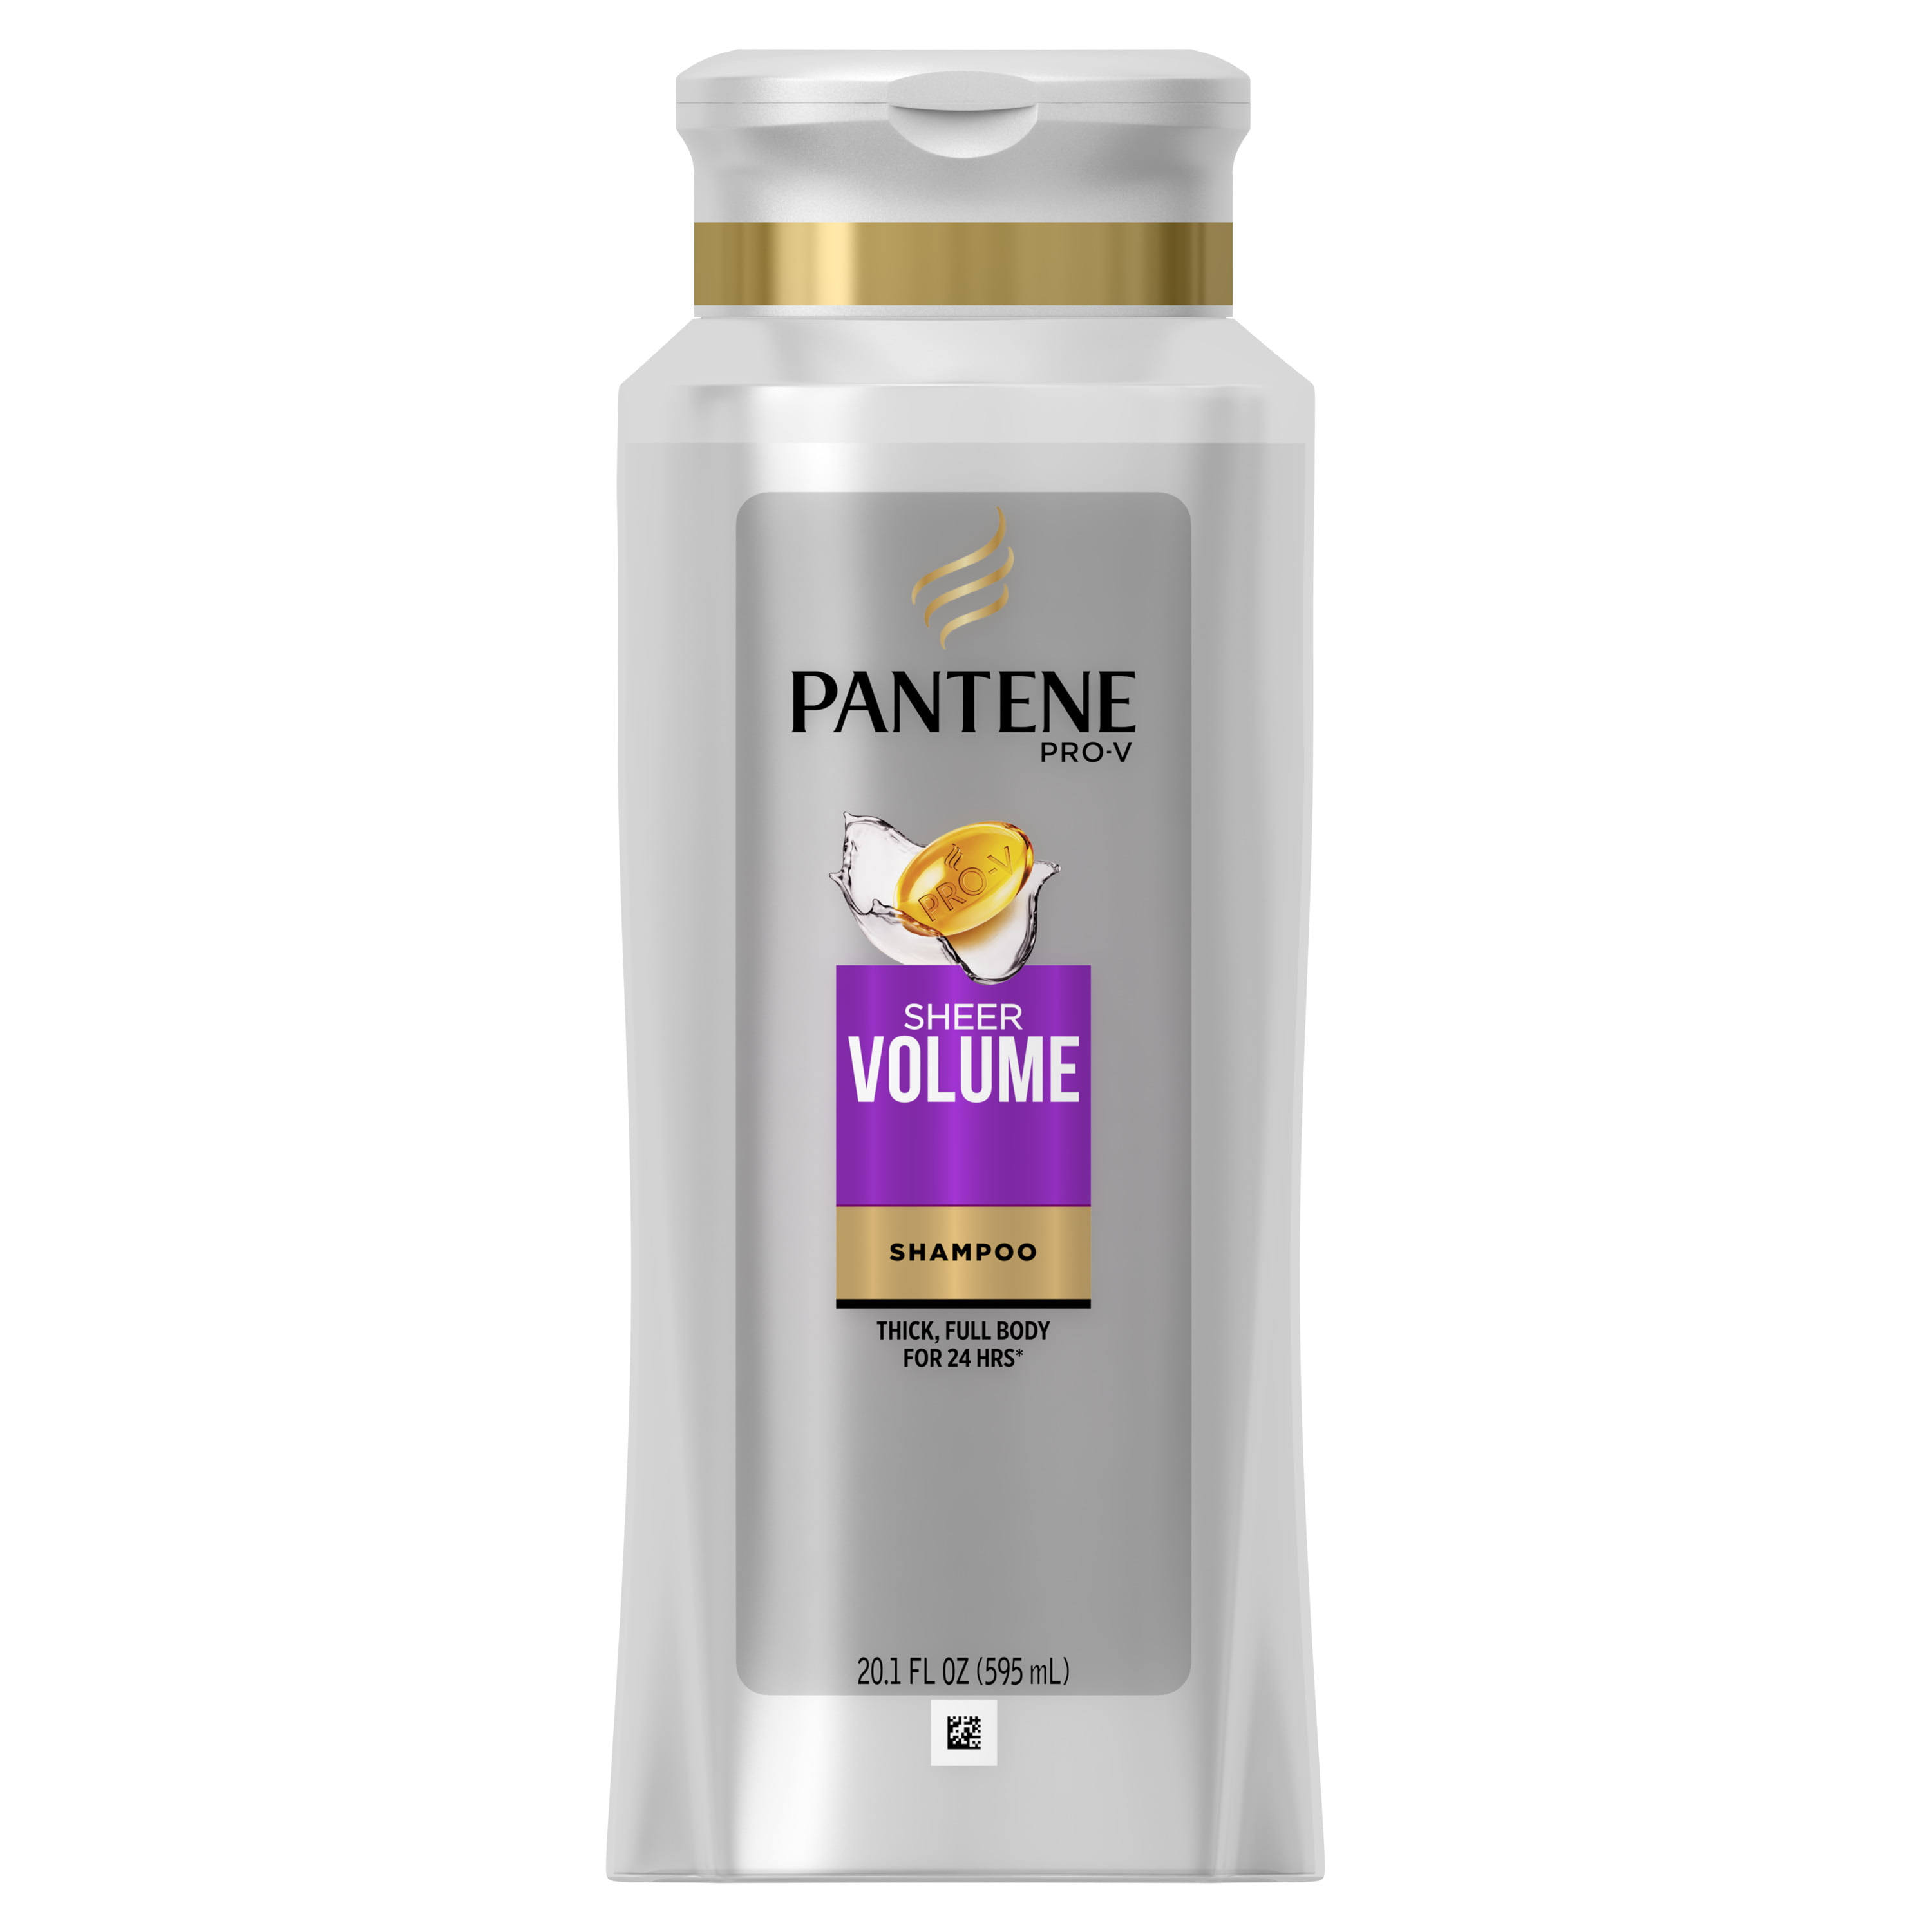 Pantene Pro-V DreamCare Sheer Volume Shampoo